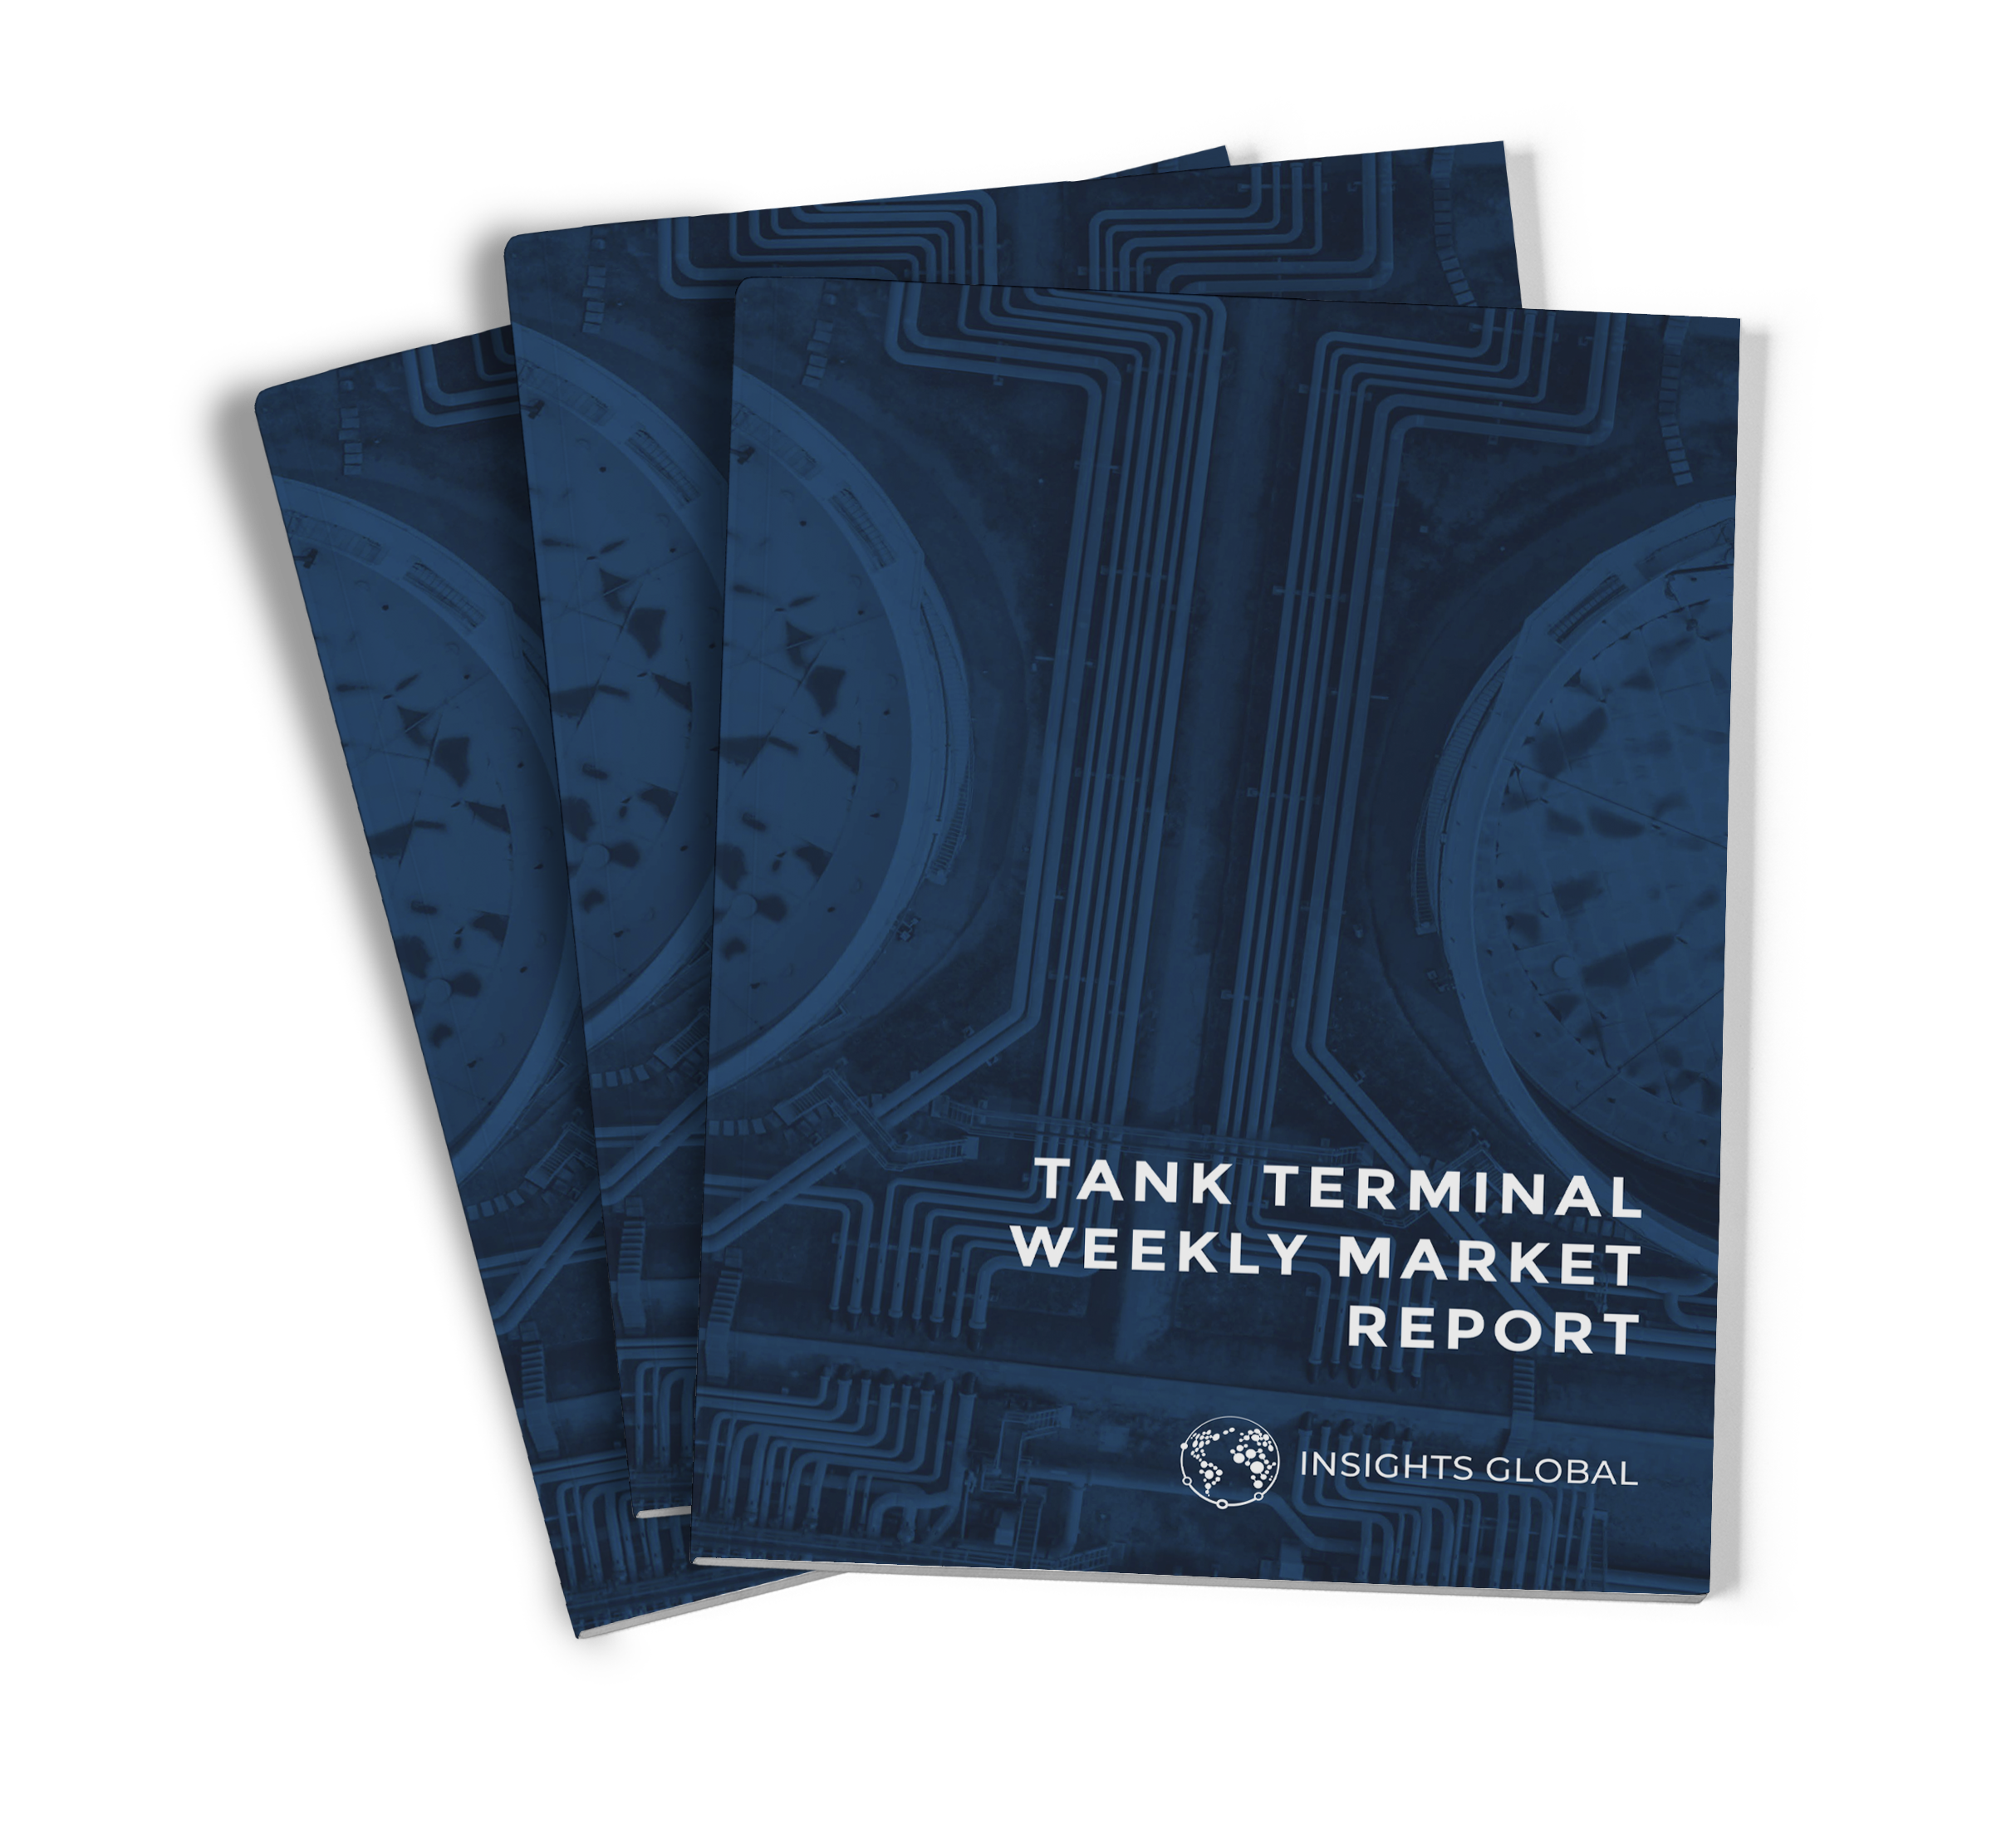 igglobal_GOSRreport_Tank Terminal Weekly Market Report